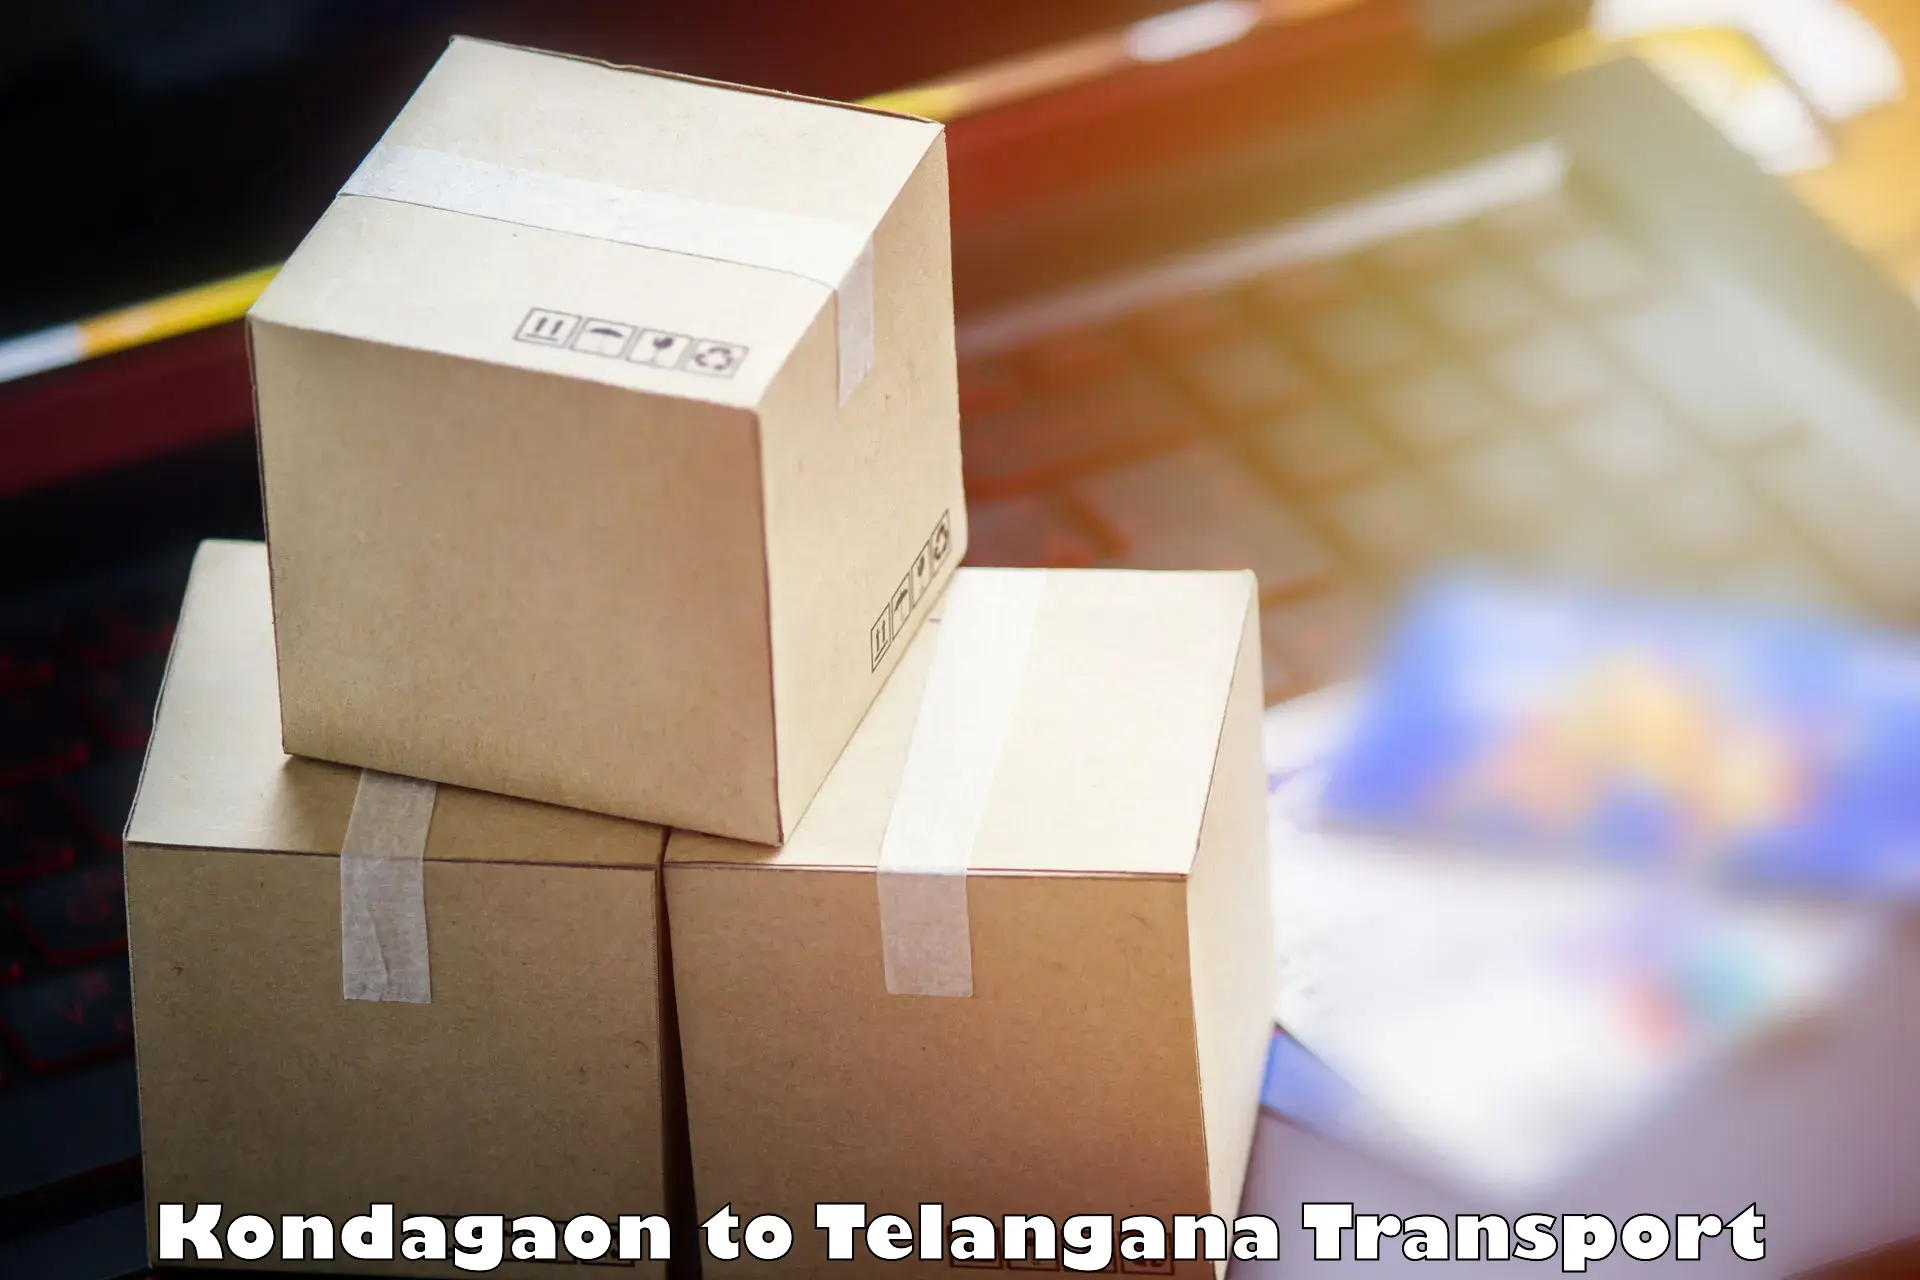 Furniture transport service in Kondagaon to Thirumalagiri